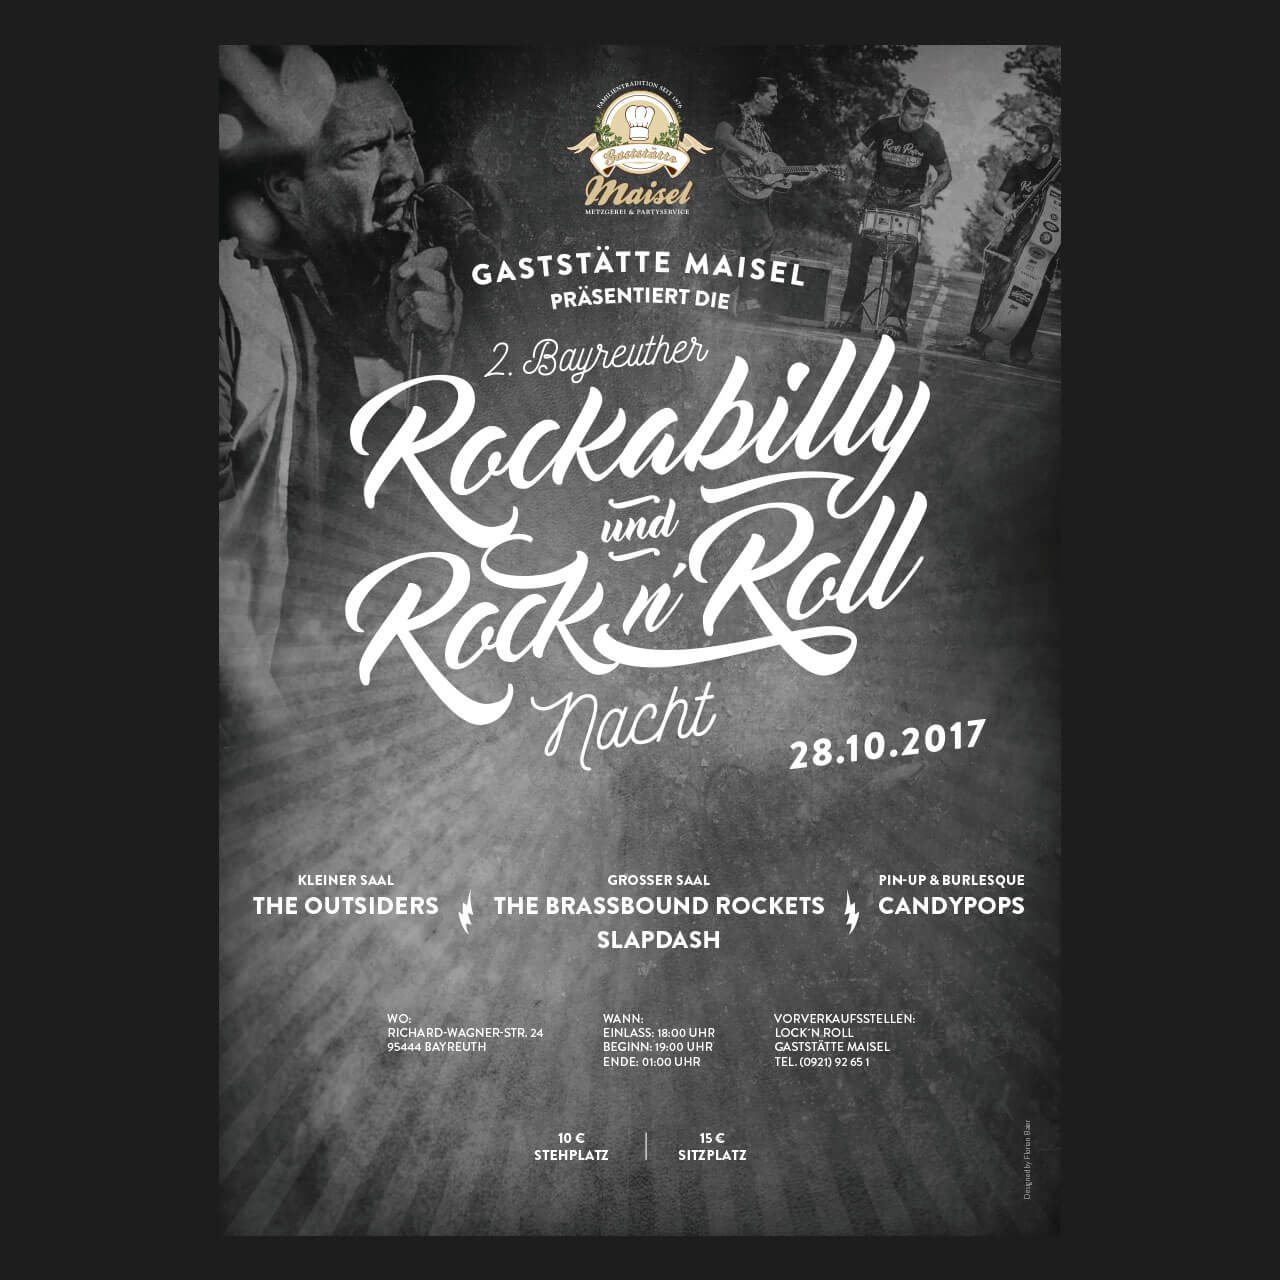 Plakatgestaltung Gaststätte Maisel 2017 für die Rockabilly und Rock n Roll Nacht in Bayreuth.